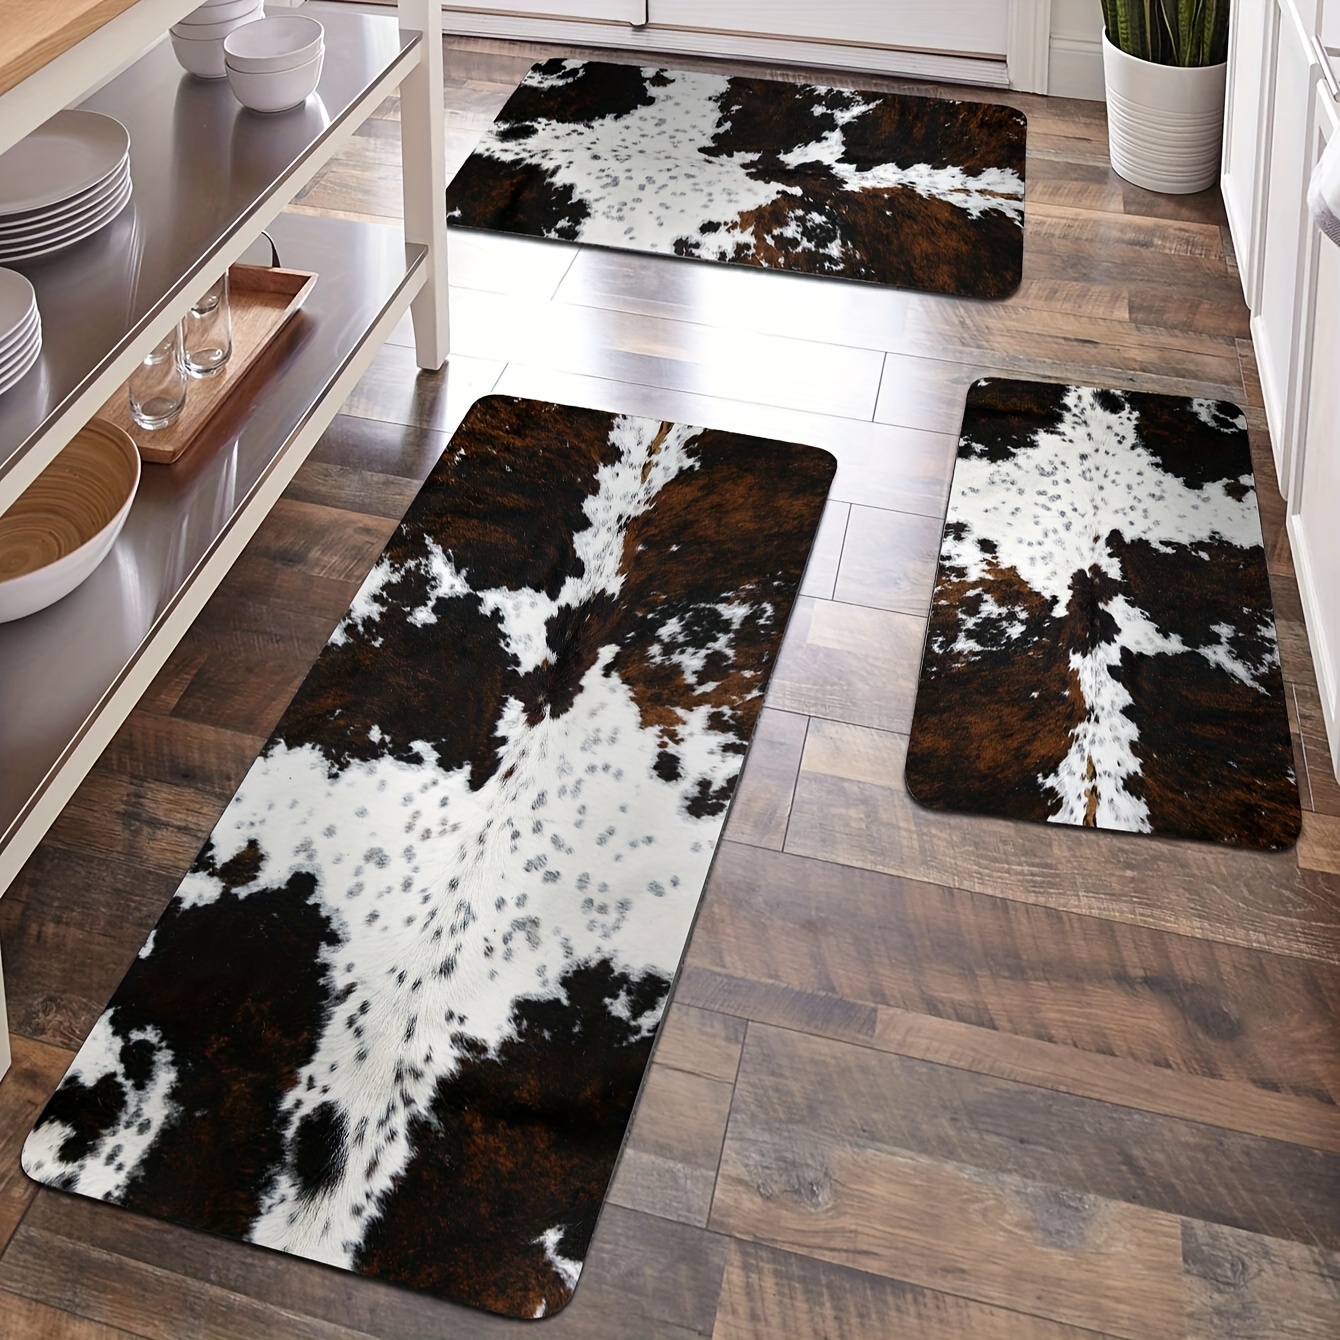 Trendy Wholesale waterproof bathroom floor mats for Decorating the